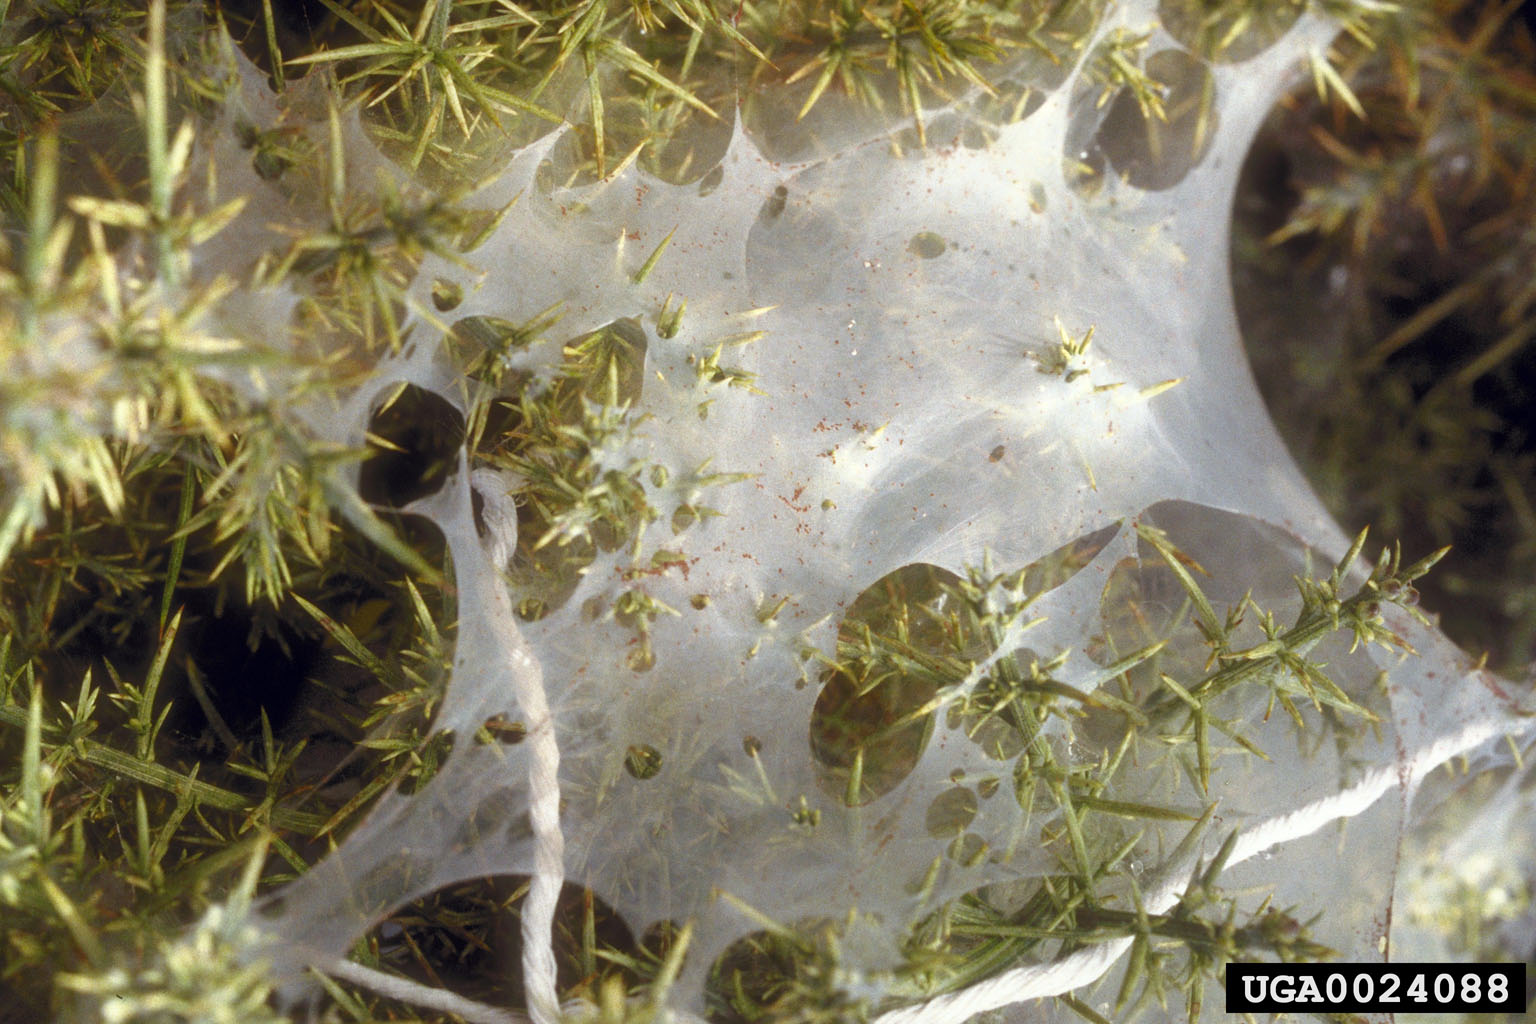 Gorse spider mite web.